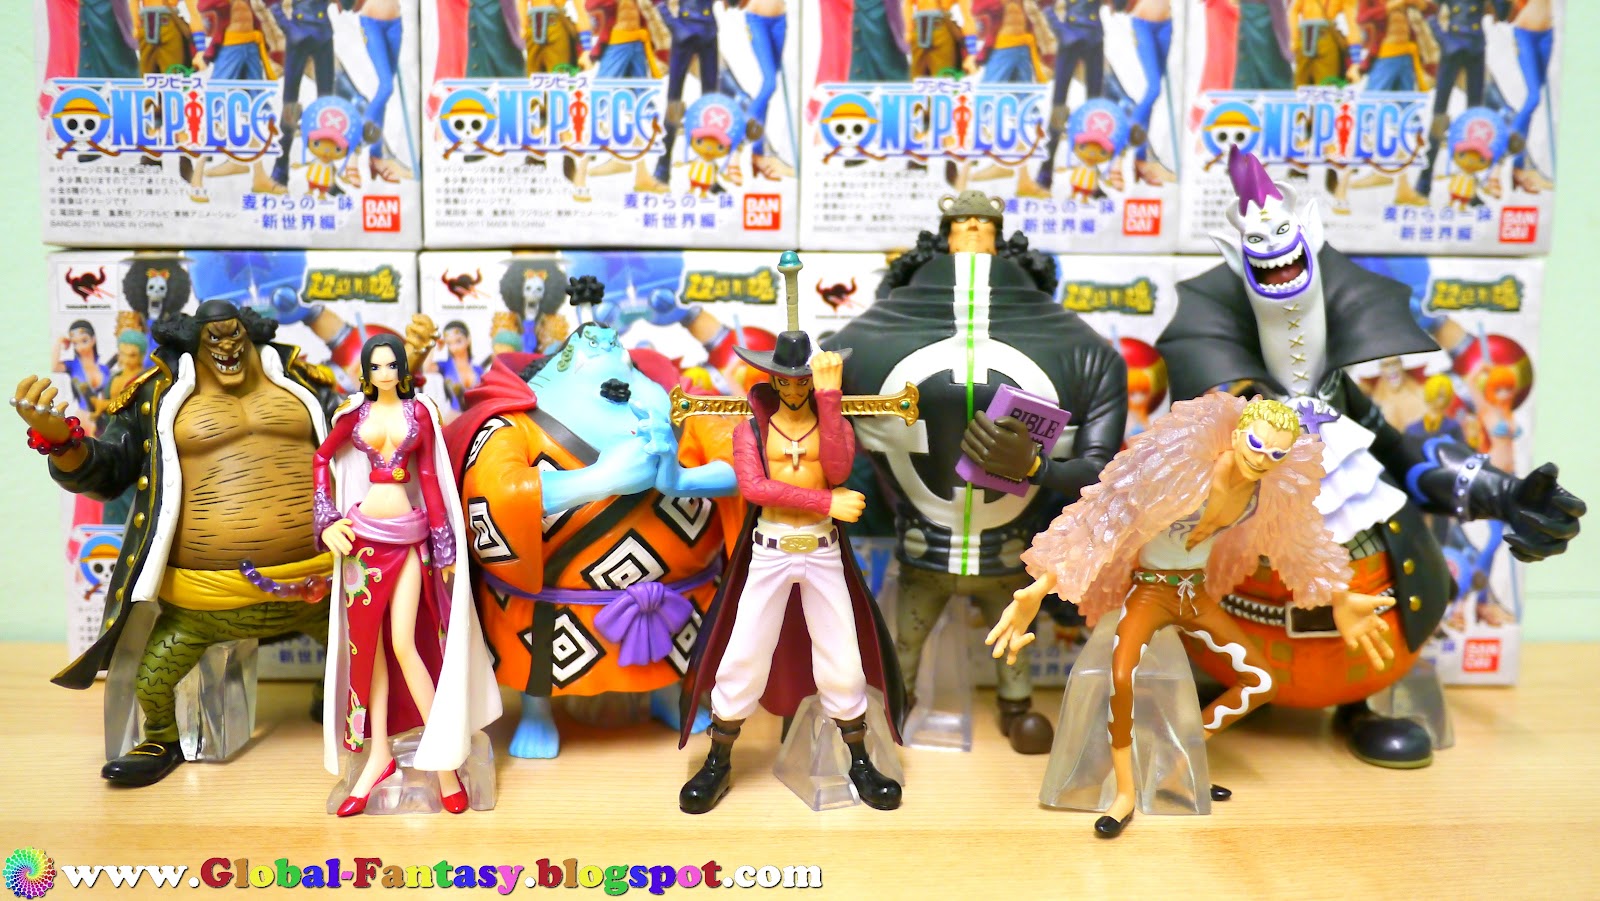 Global Fantasy One Piece Bandai Super Modeling Soul Gathering The Shichibukai